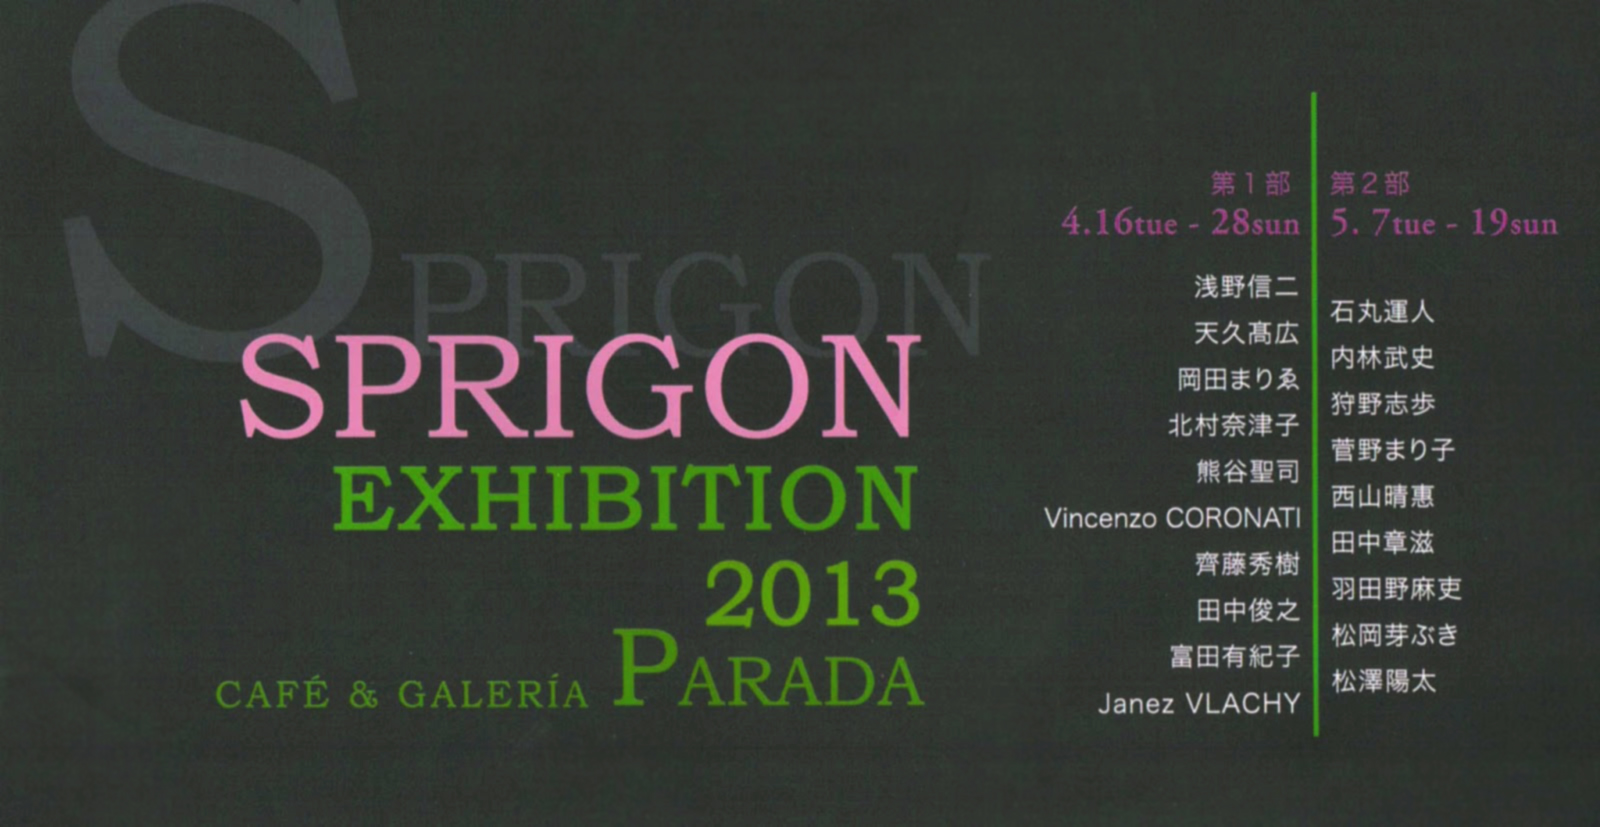 sprigon2013_invitation01